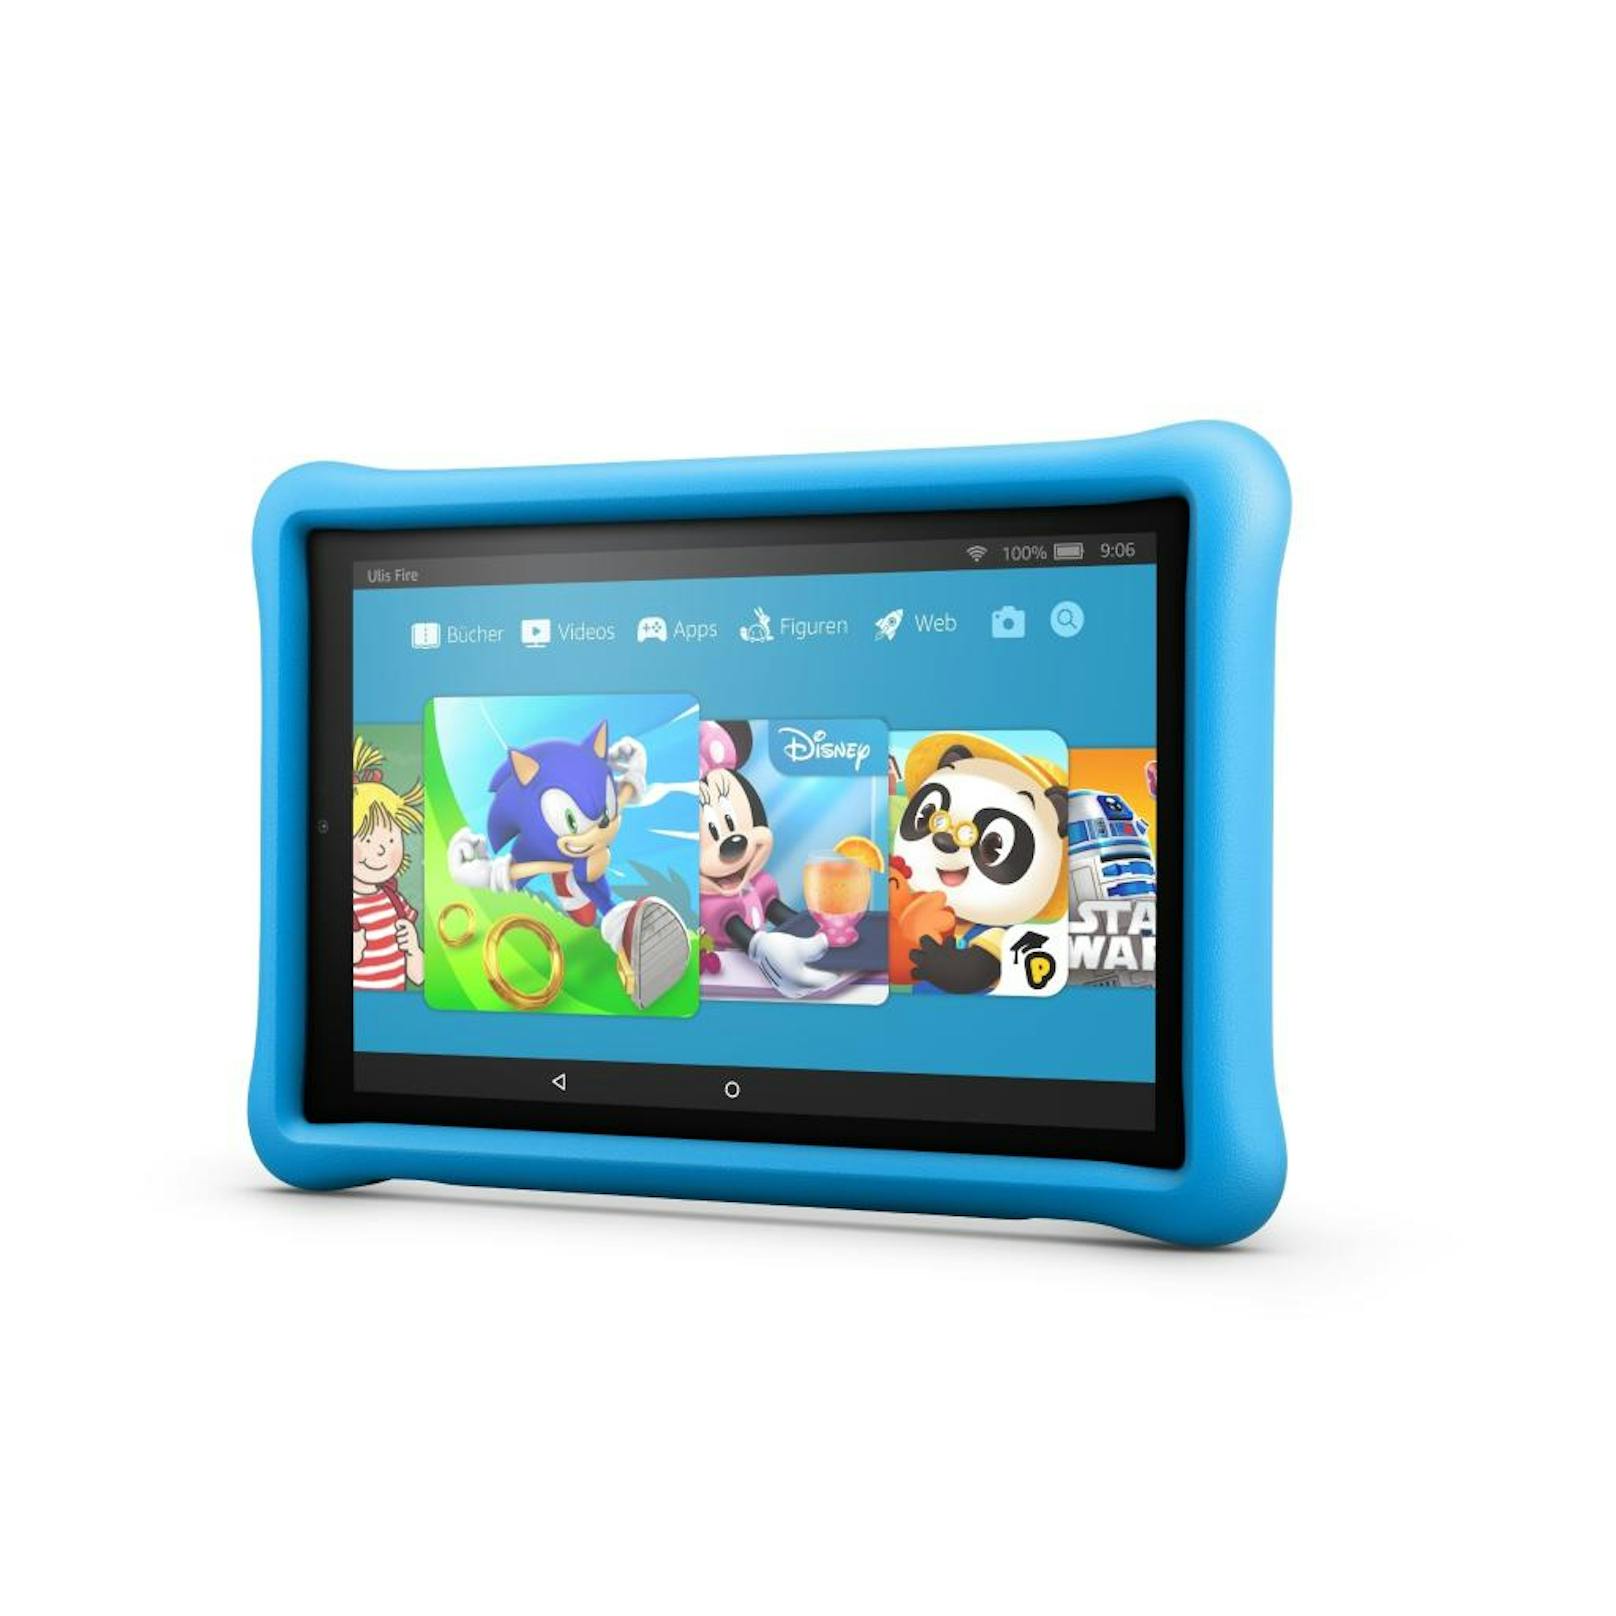 Die Fire Kids Edition Tablets werden mit einer speziellen kindertauglichen Schutzhülle in blau oder pink ausgeliefert.